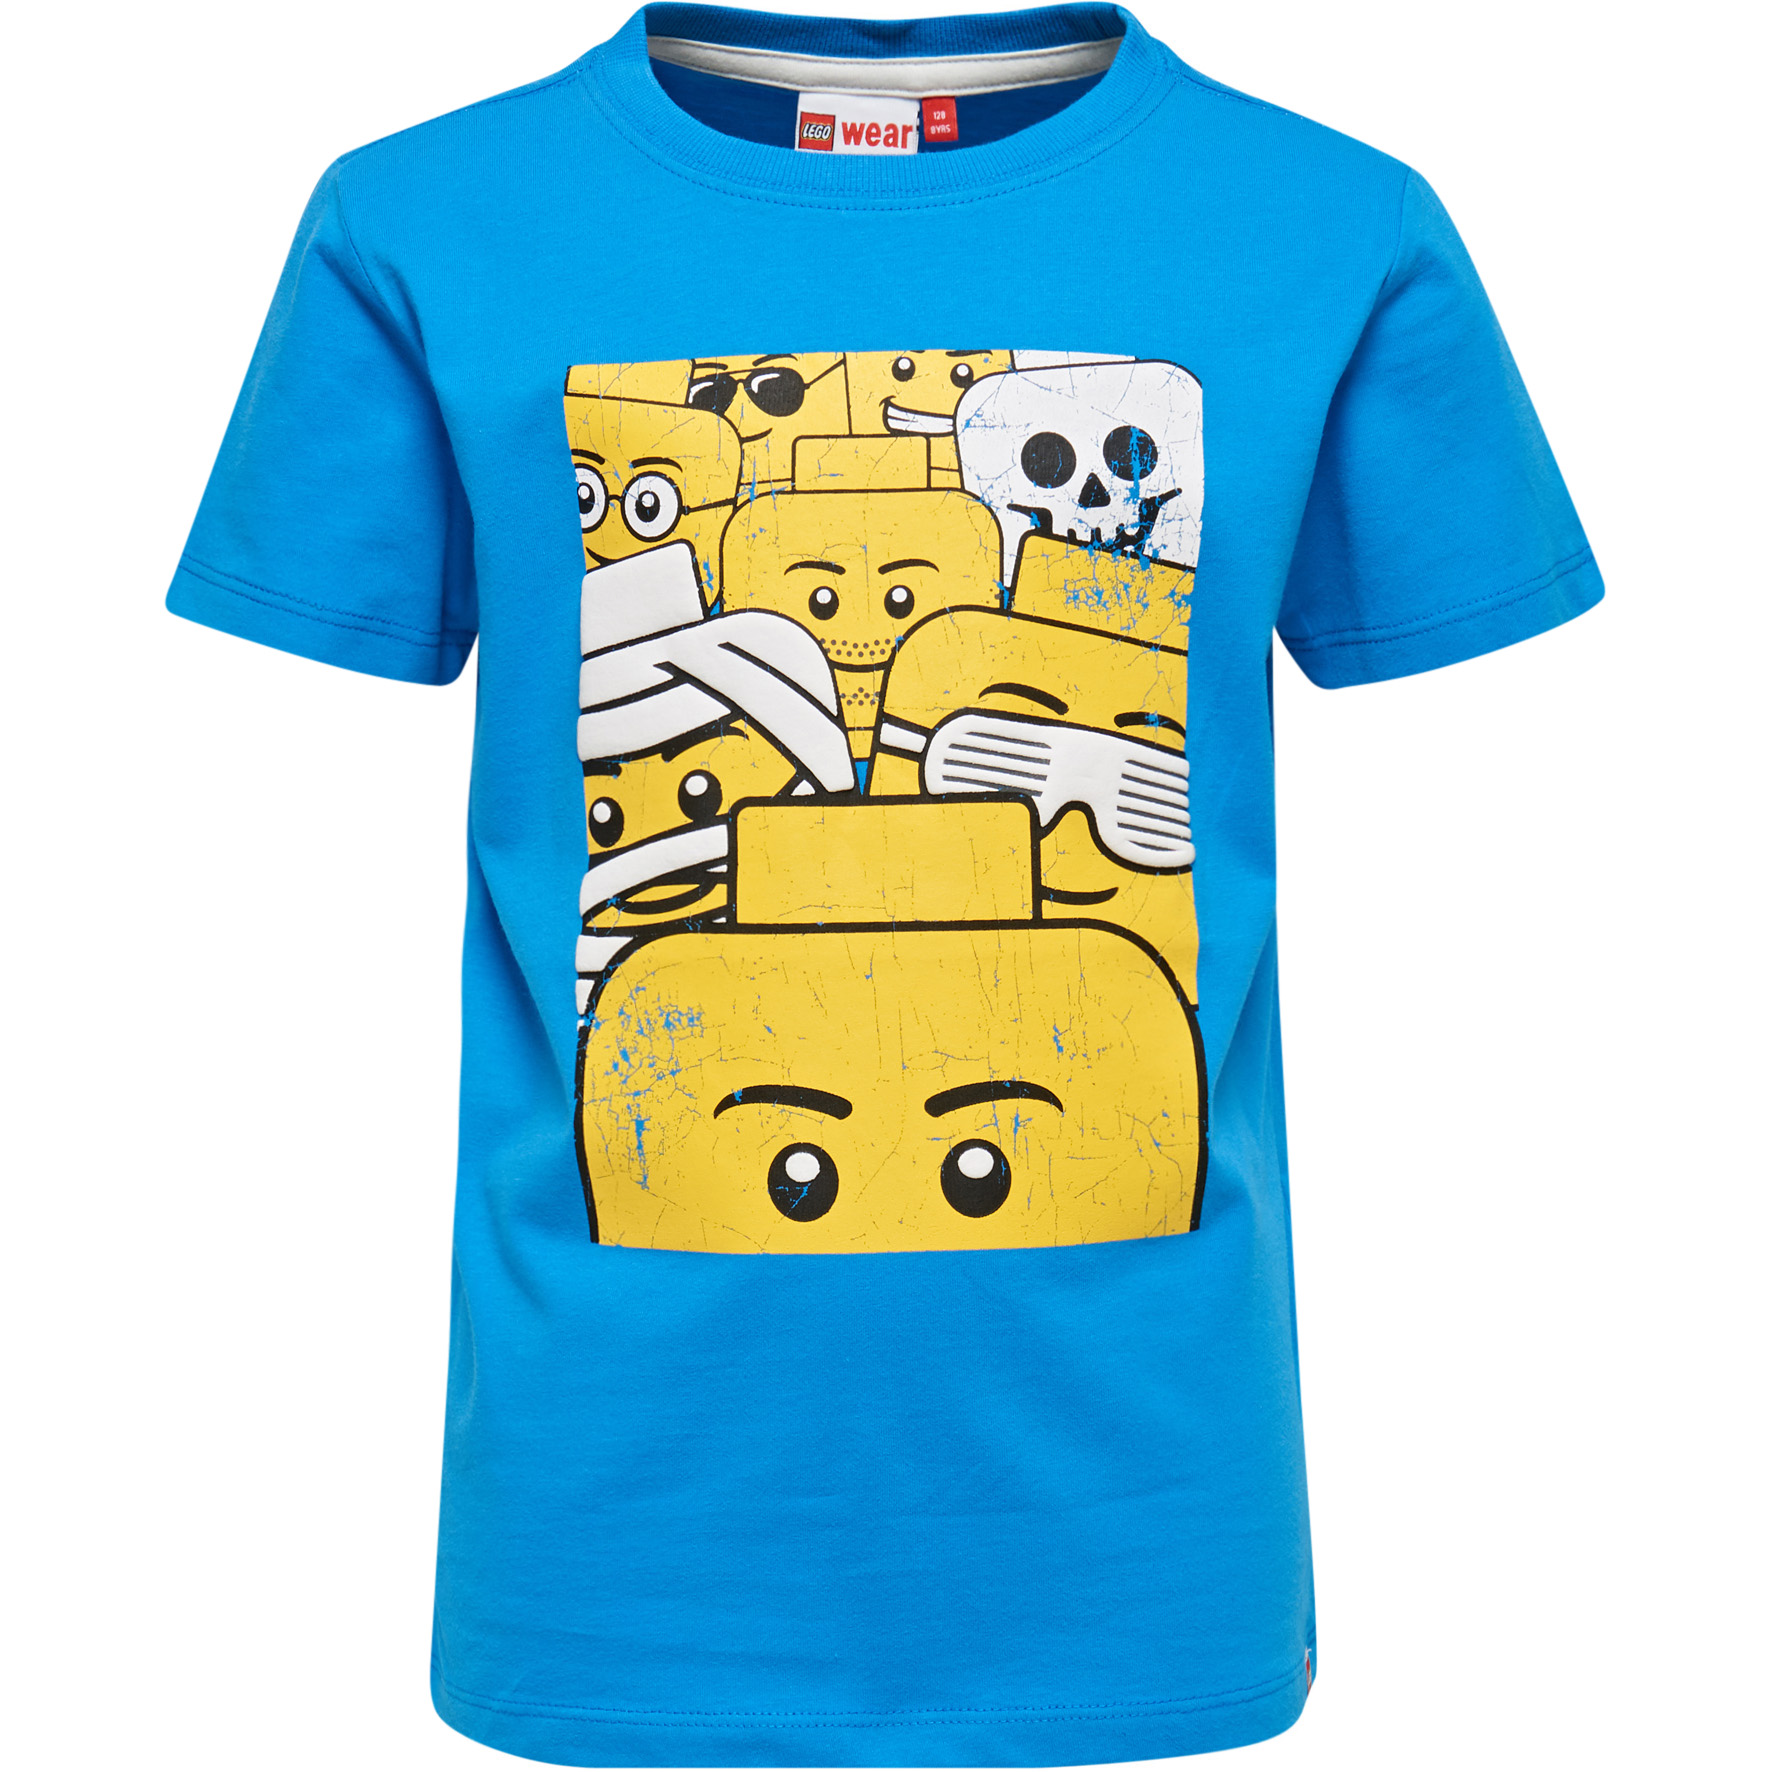 raid Fremskreden springvand Køb LEGO Wear - LEGO T-shirt 505